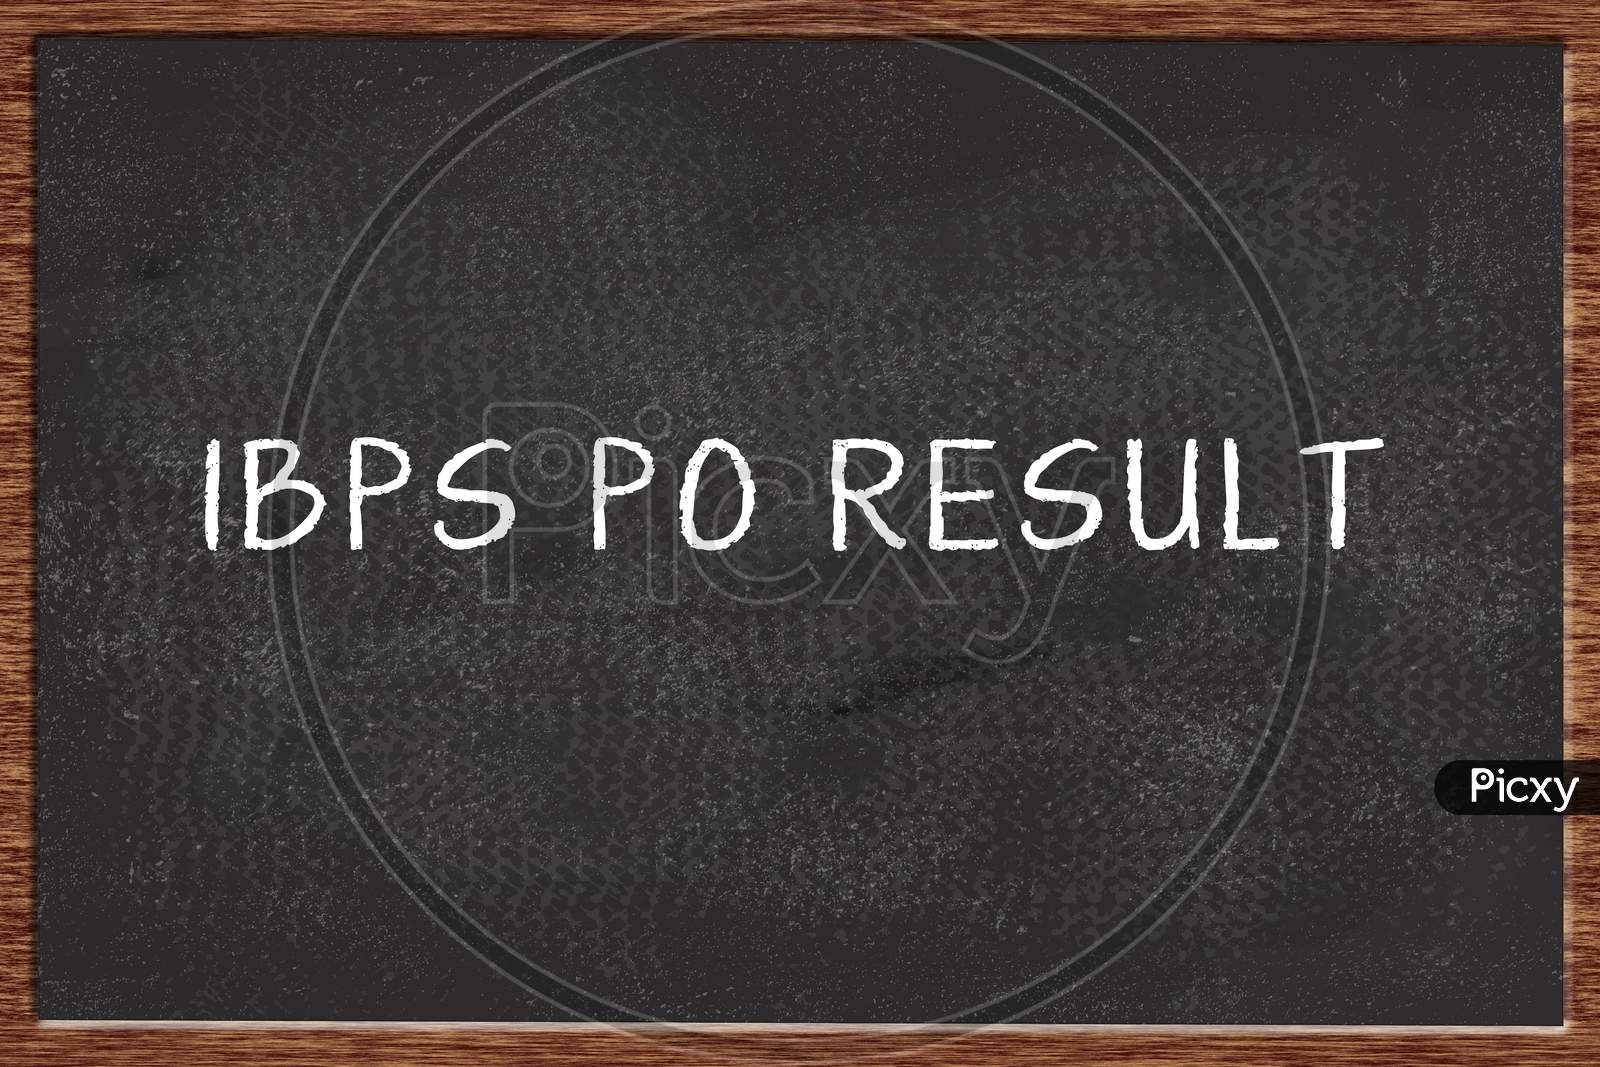 Ibps Po Result Written On Black Chalkboard.